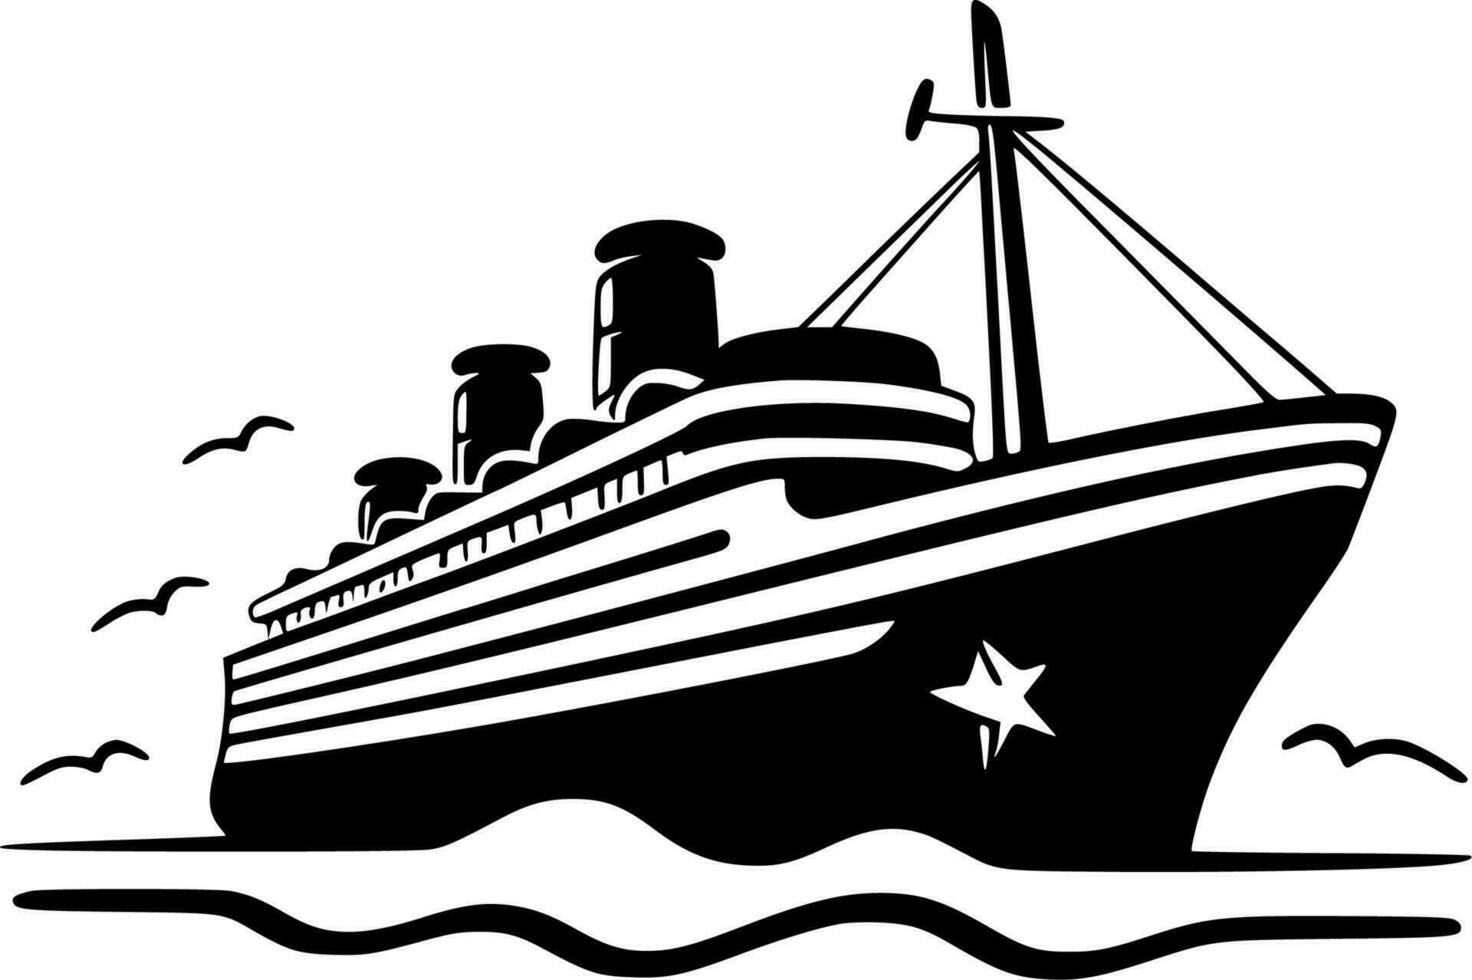 crucero - negro y blanco aislado icono - vector ilustración